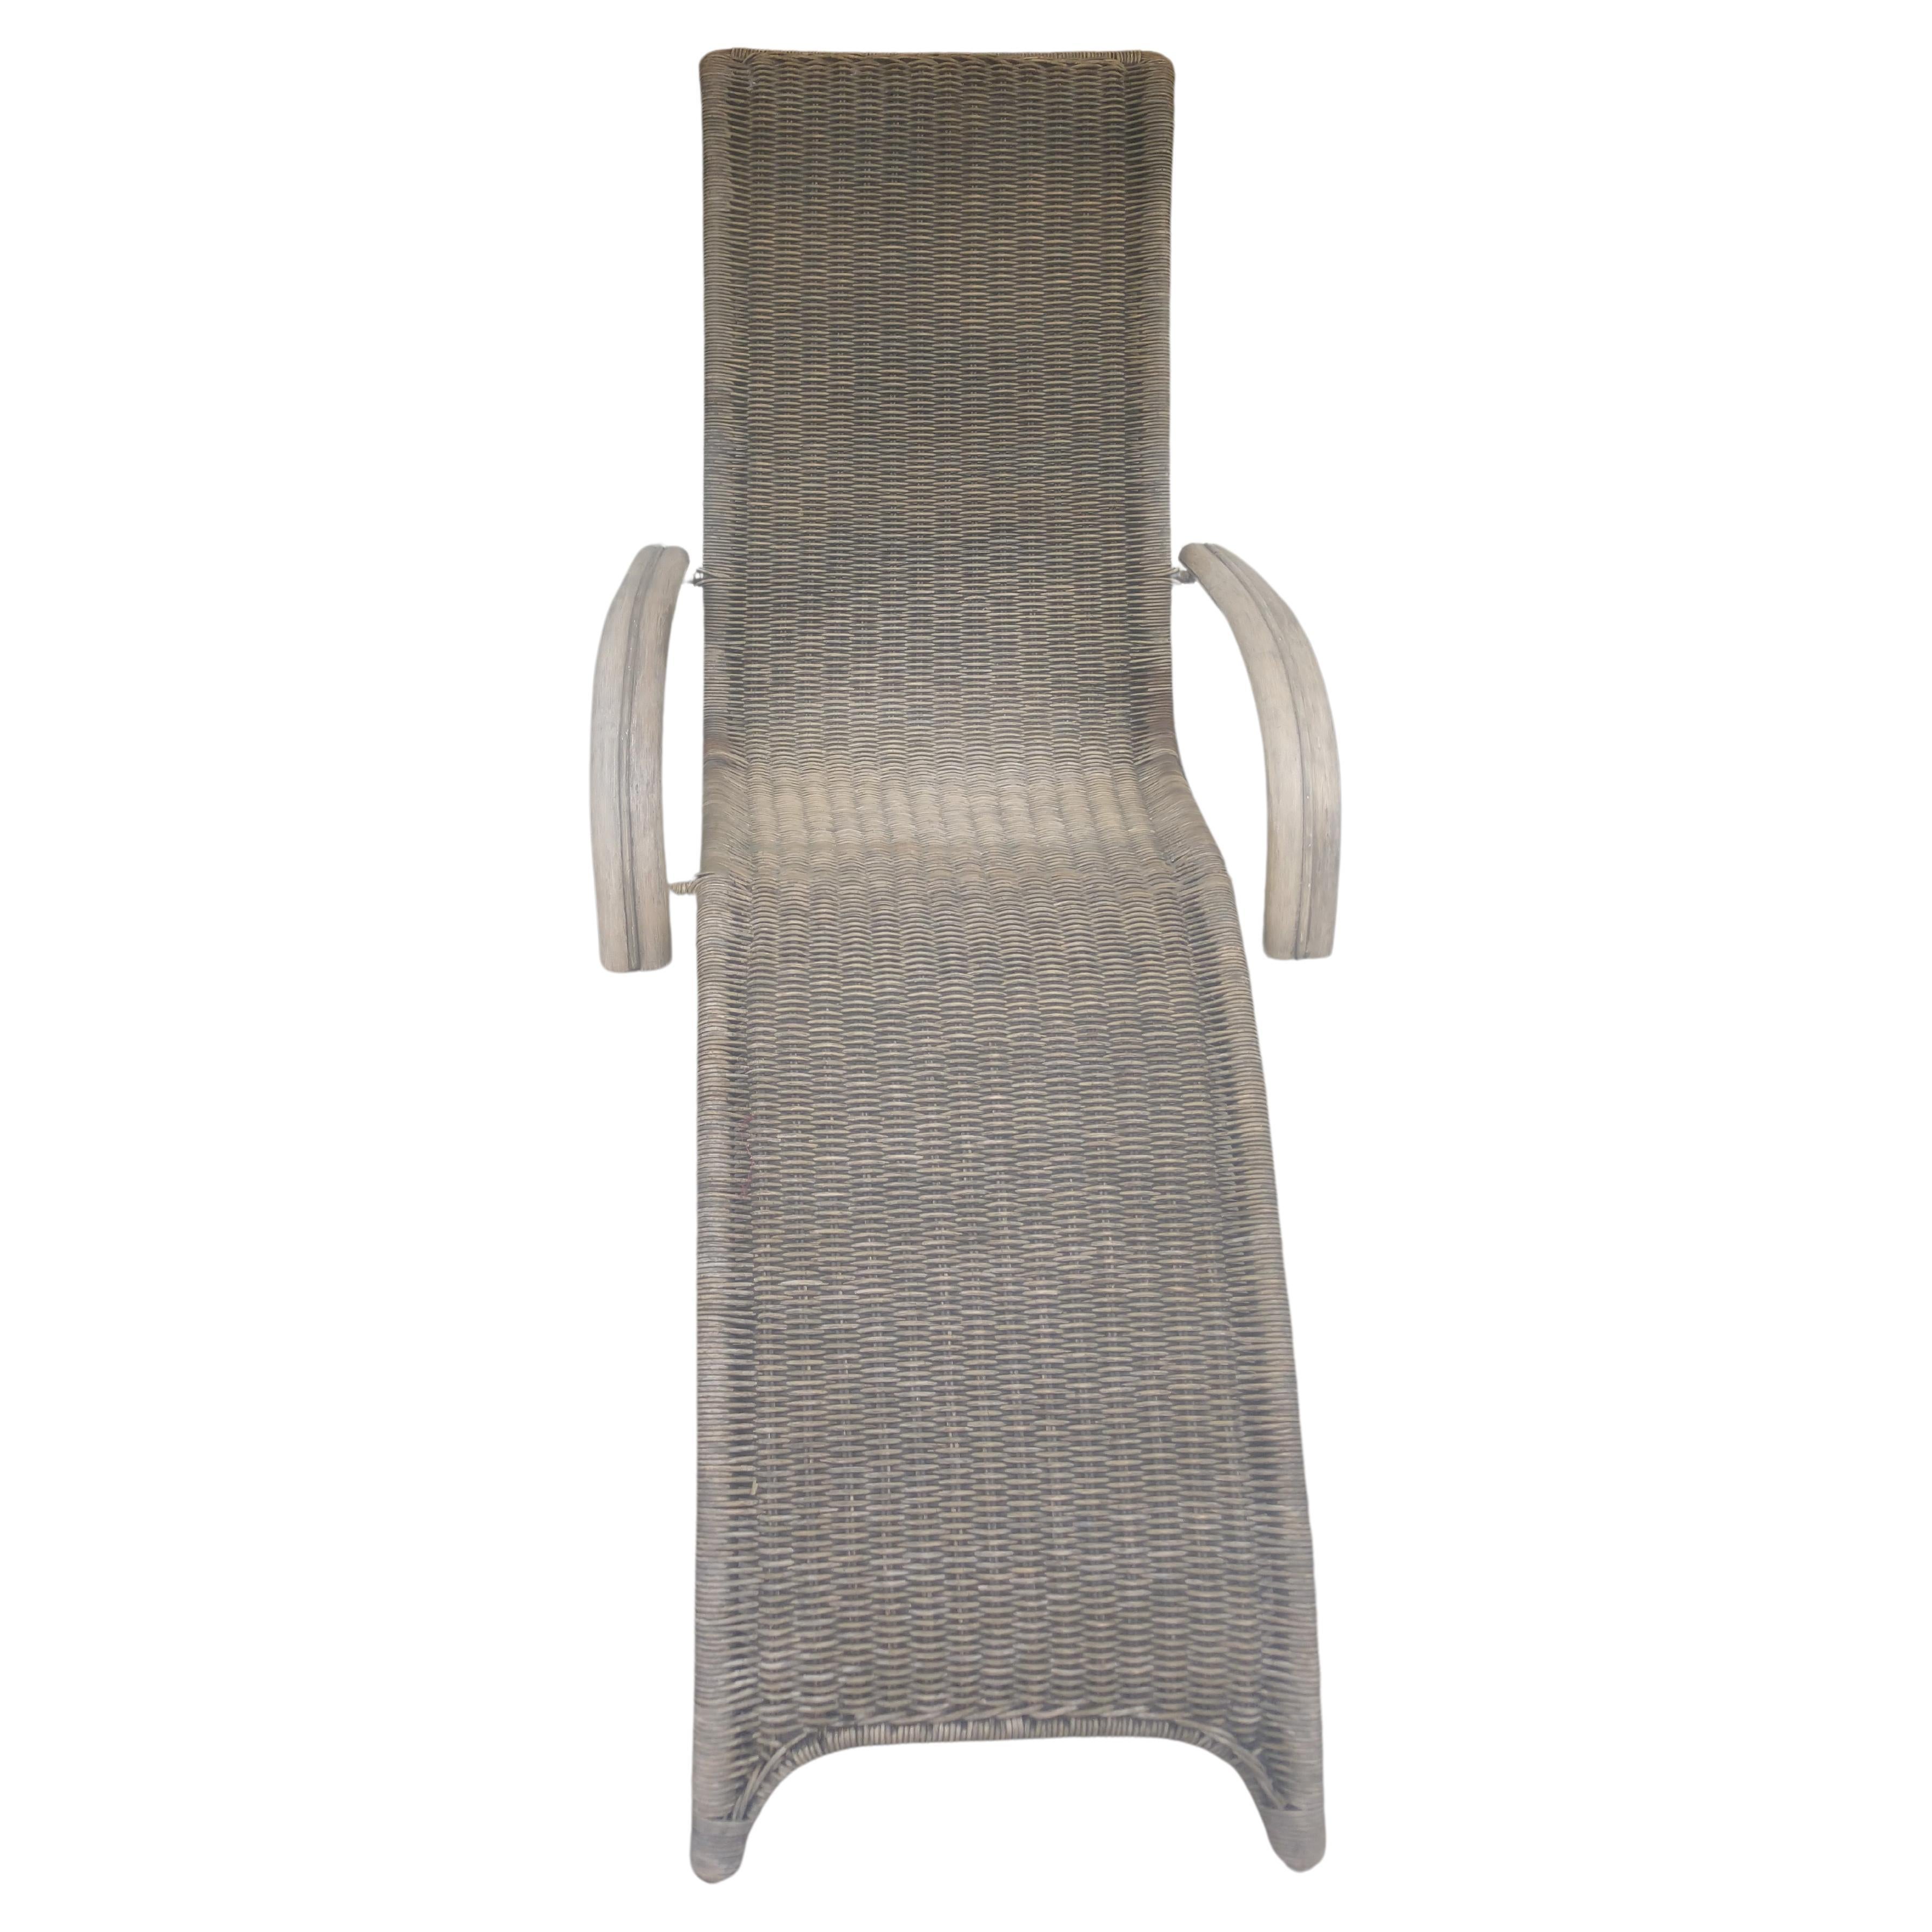 Fabelhafter skulpturaler Chaiselongue-Sessel aus Rattan, der Franco Albini zugeschrieben wird. Rattan ist dicht über einen vermessingten Stahlrahmen geflochten. Sehr starker und steifer Rahmen. In ausgezeichnetem Vintage-Zustand mit minimalen